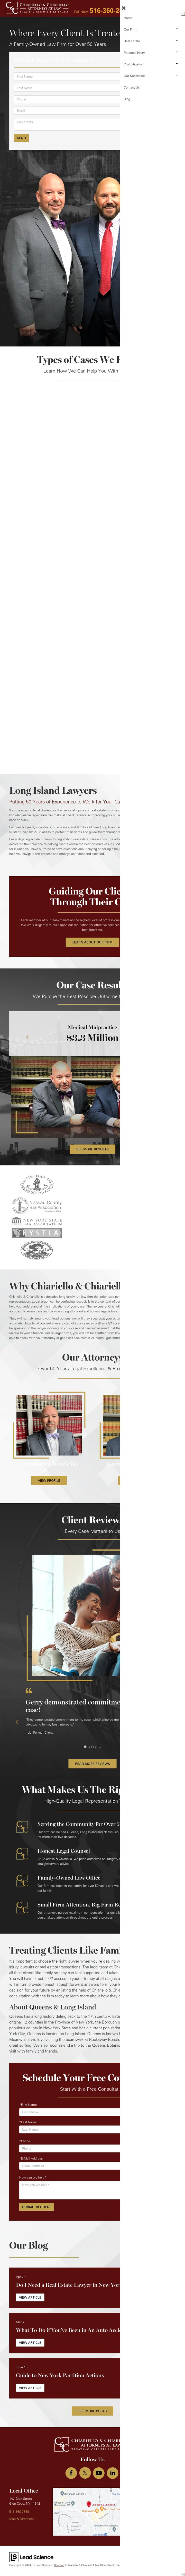 Chiariello & Chiariello - Glen Cove NY Lawyers